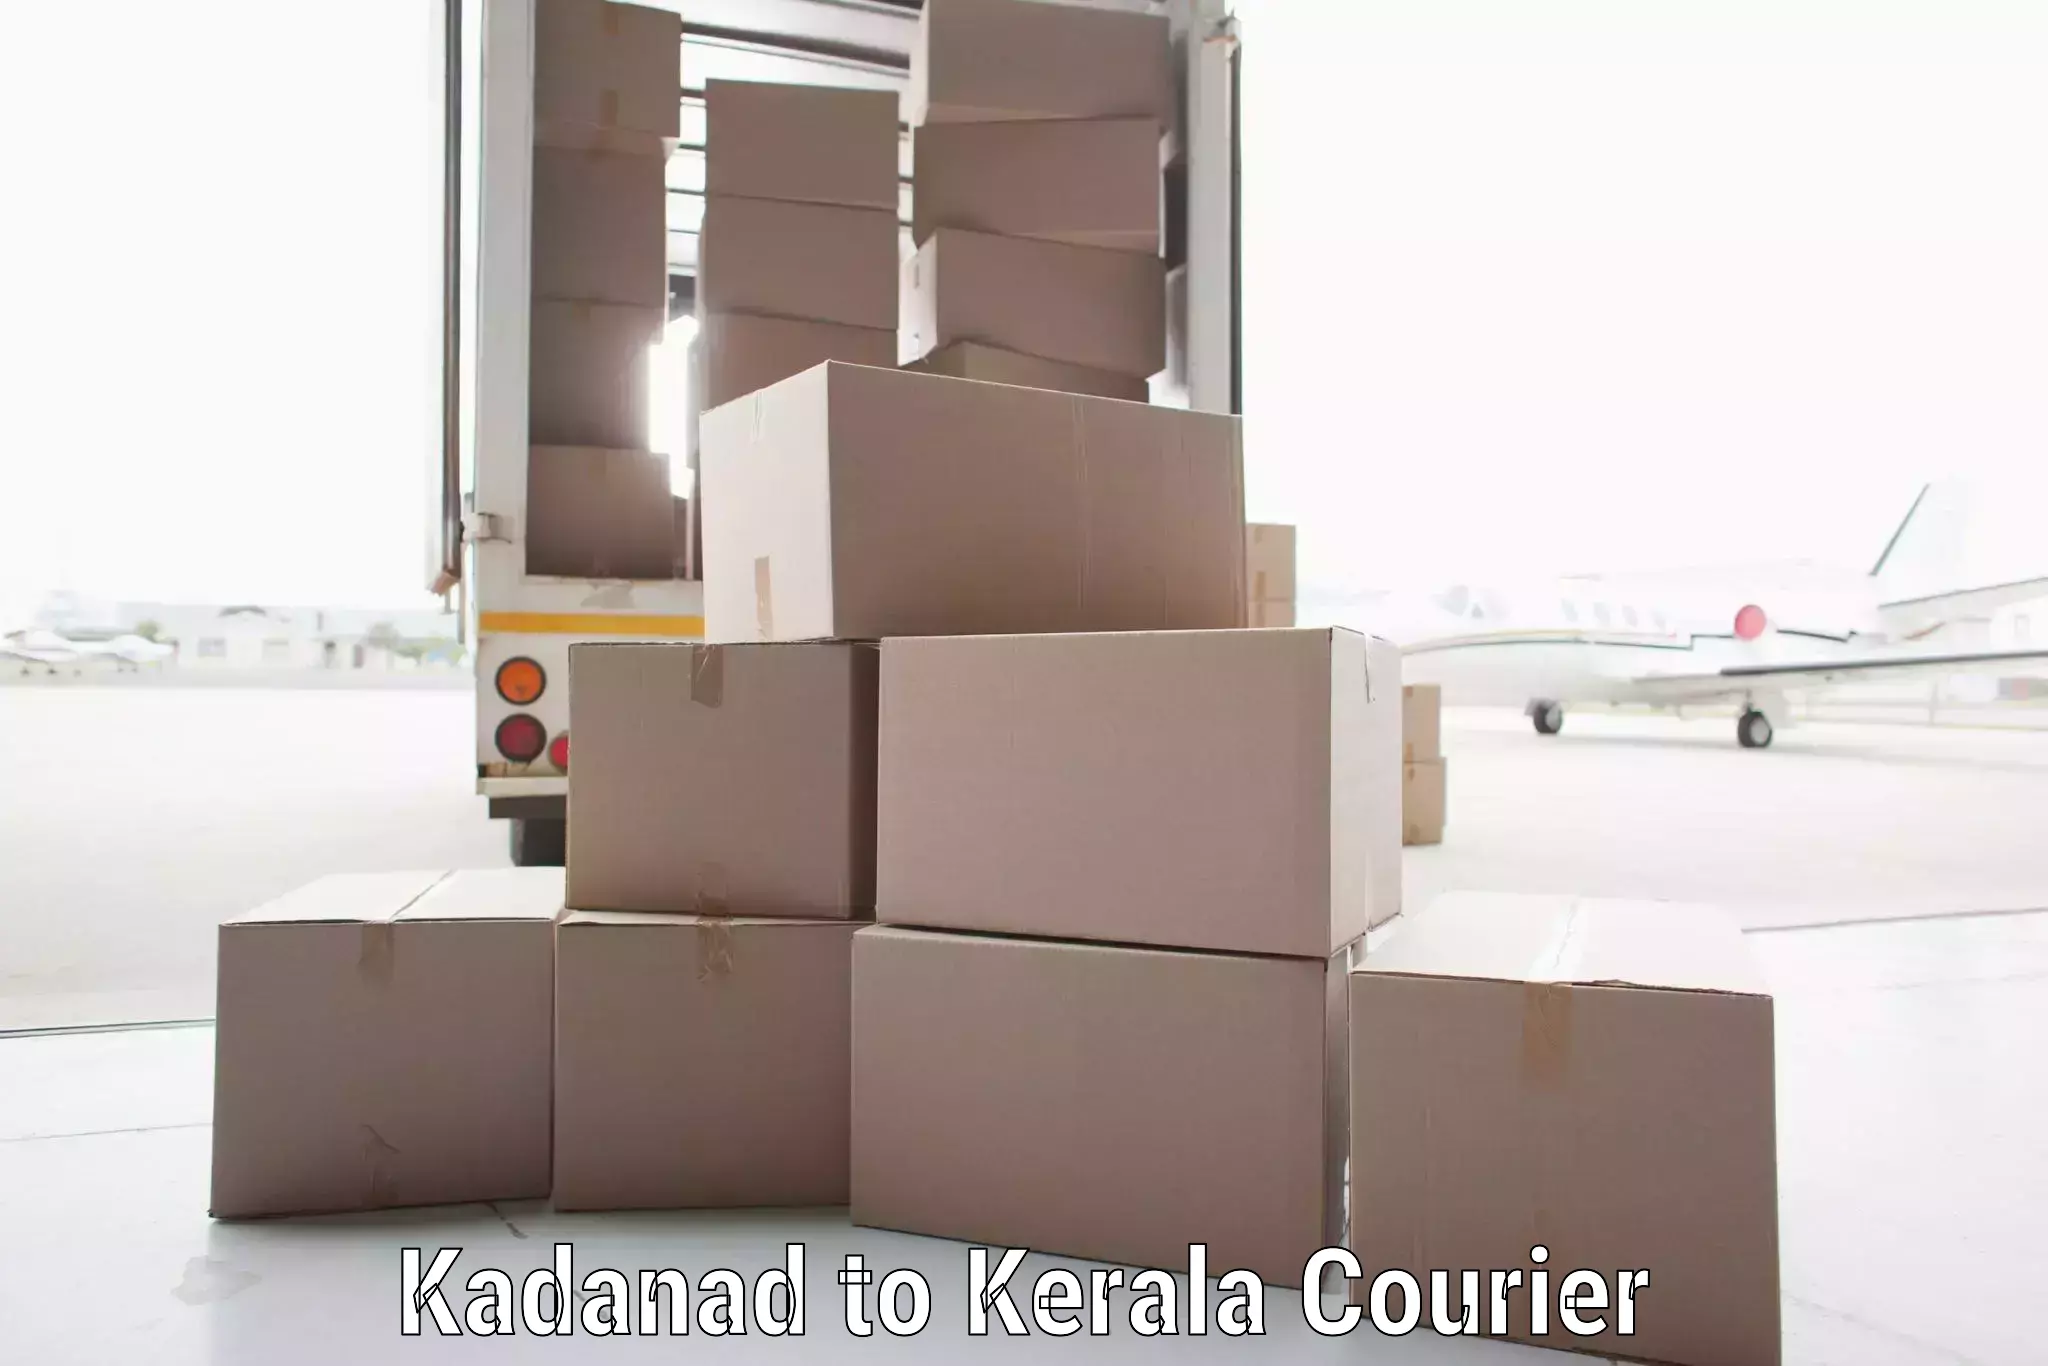 Holiday shipping services Kadanad to Ponekkara